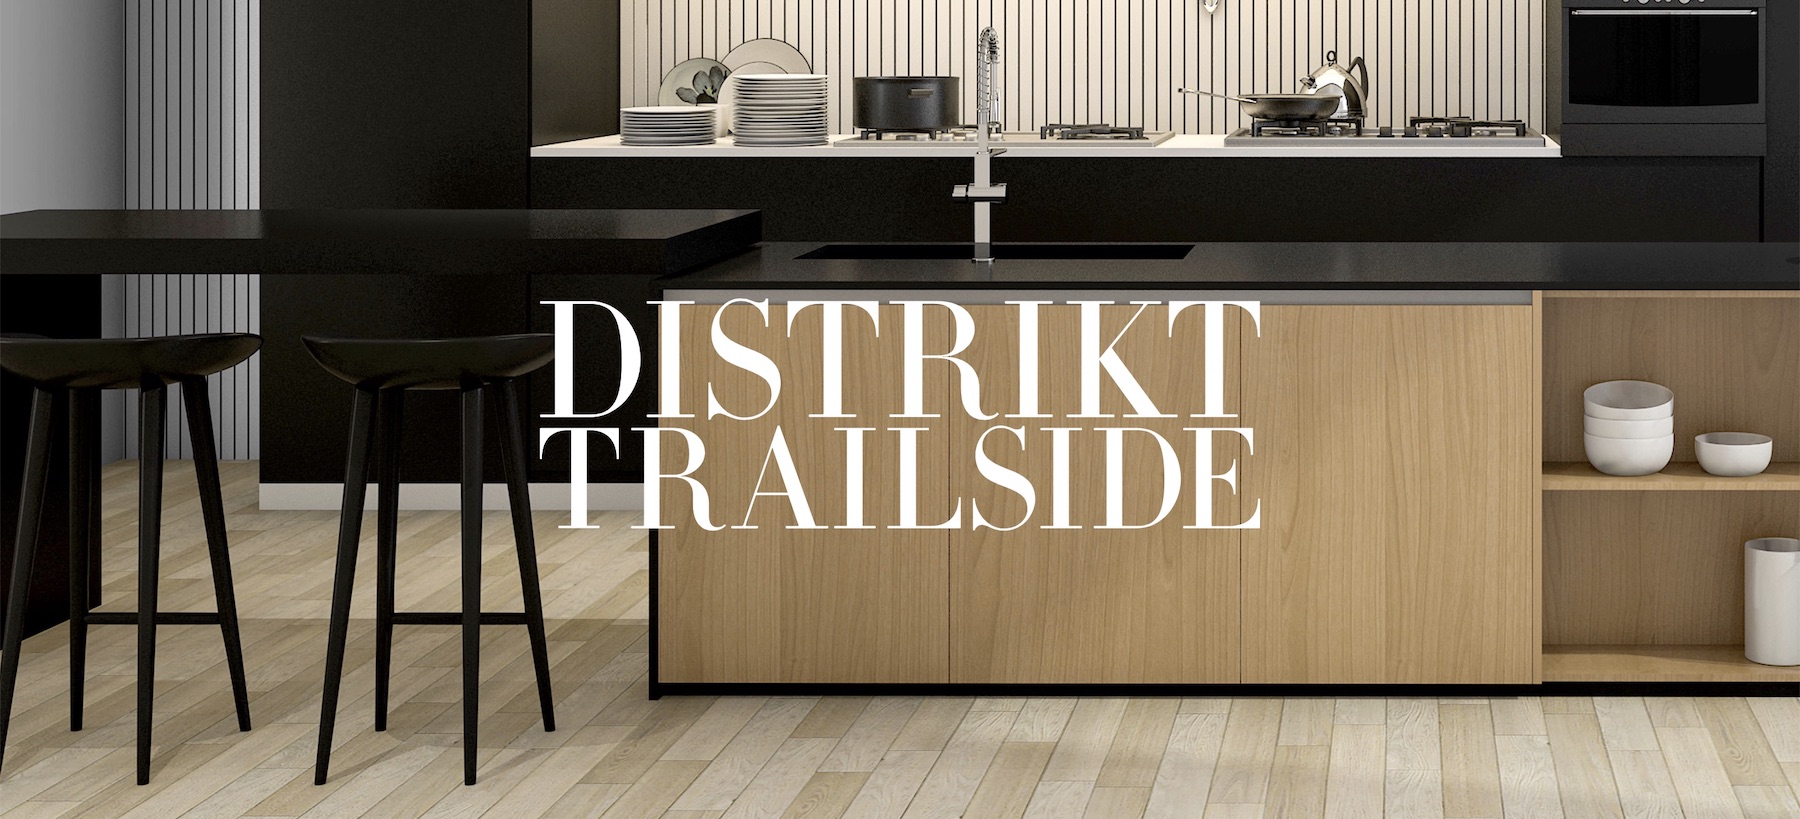 Distrikt Trailside text over modern kitchen background